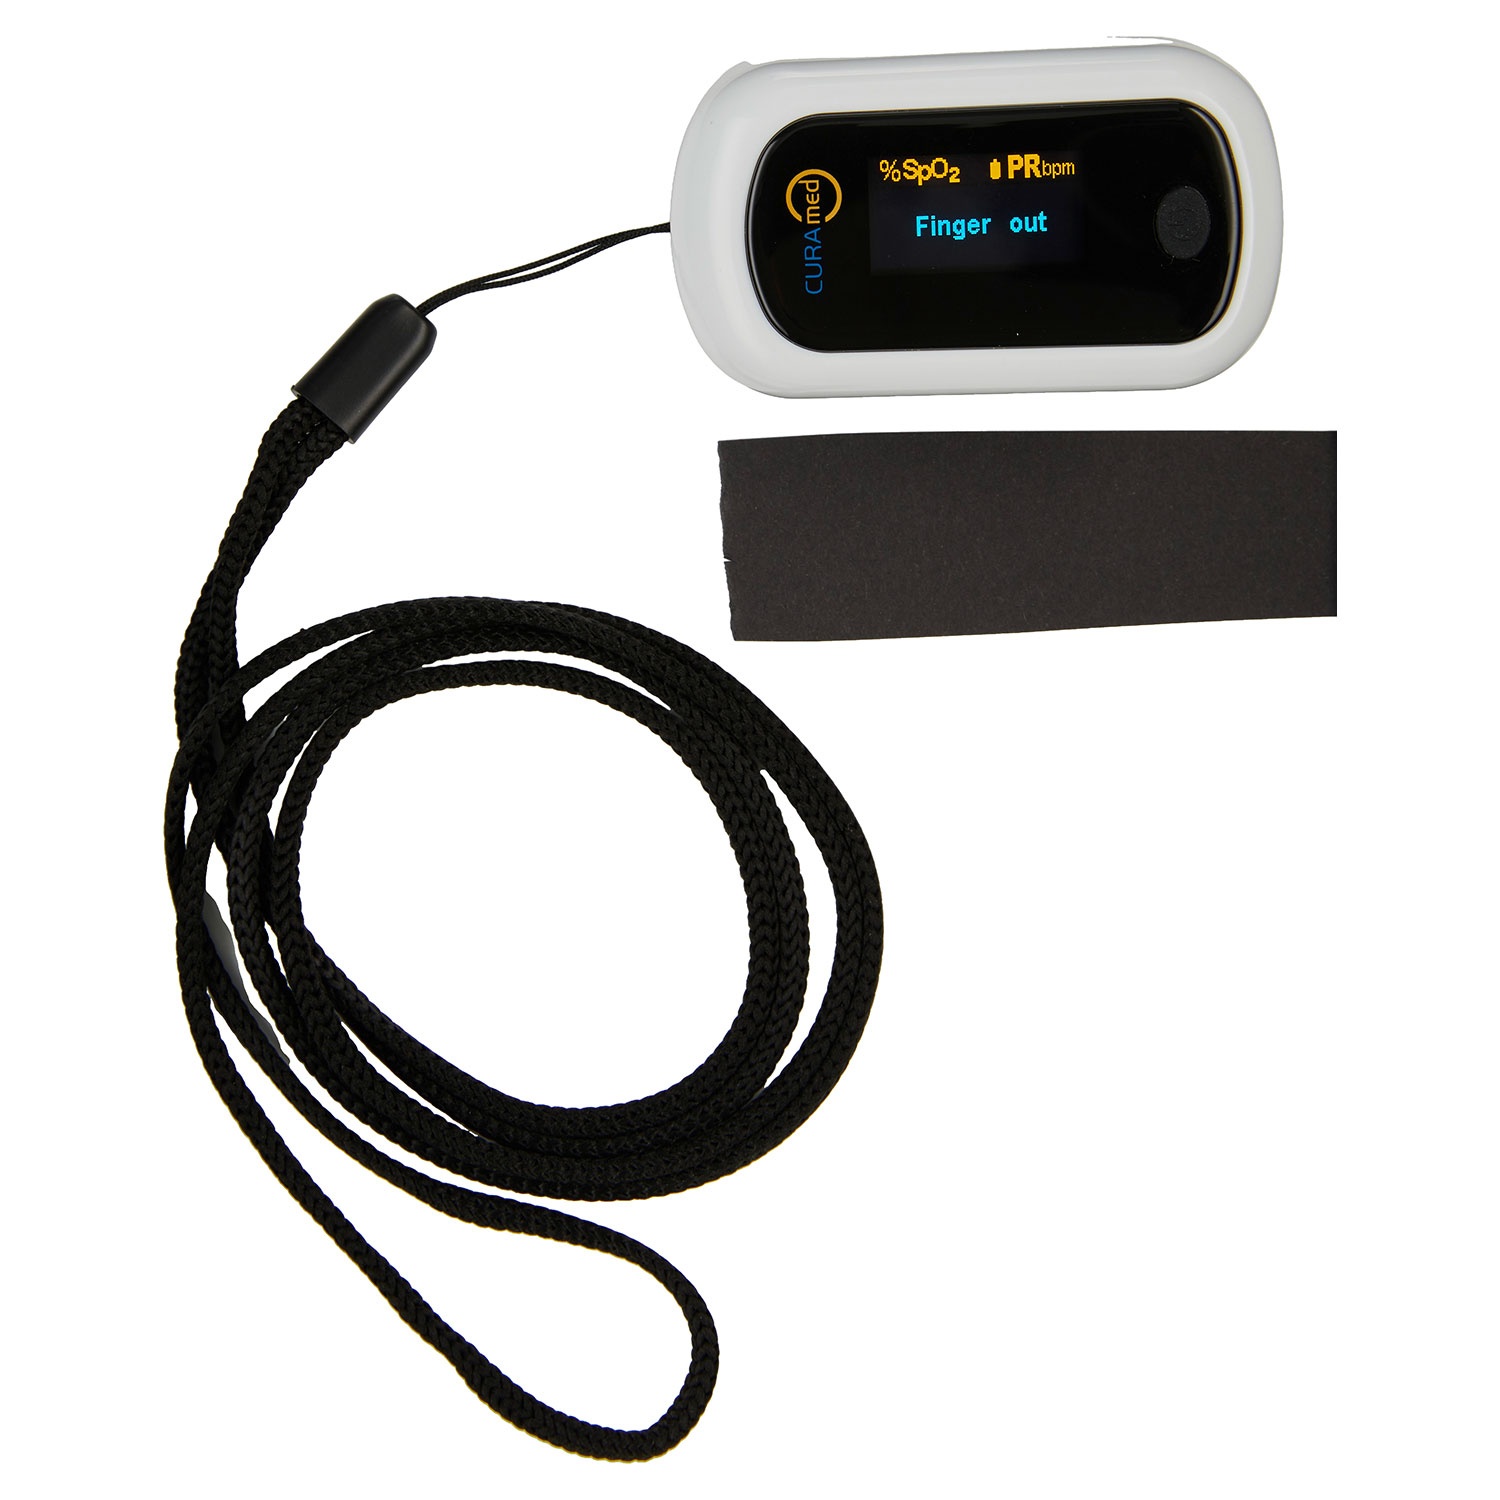 CURAMED Blutdruckmessgerät, kontaktloses Fieberthermometer oder Pulsoximeter